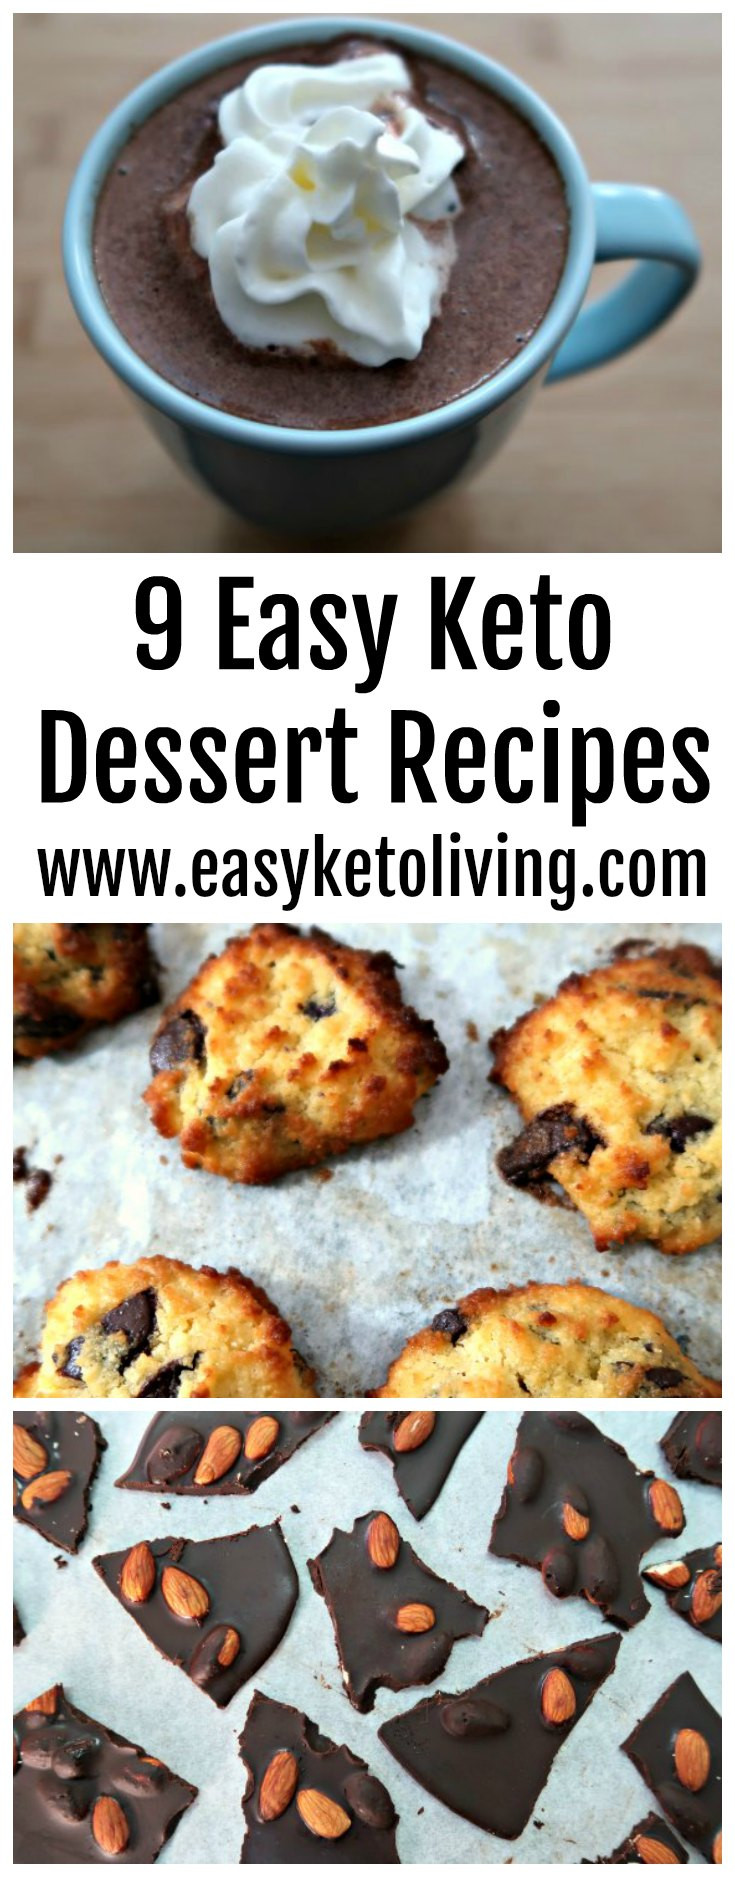 Keto Dessert Easy
 9 Easy Keto Dessert Recipes Quick Low Carb Ketogenic